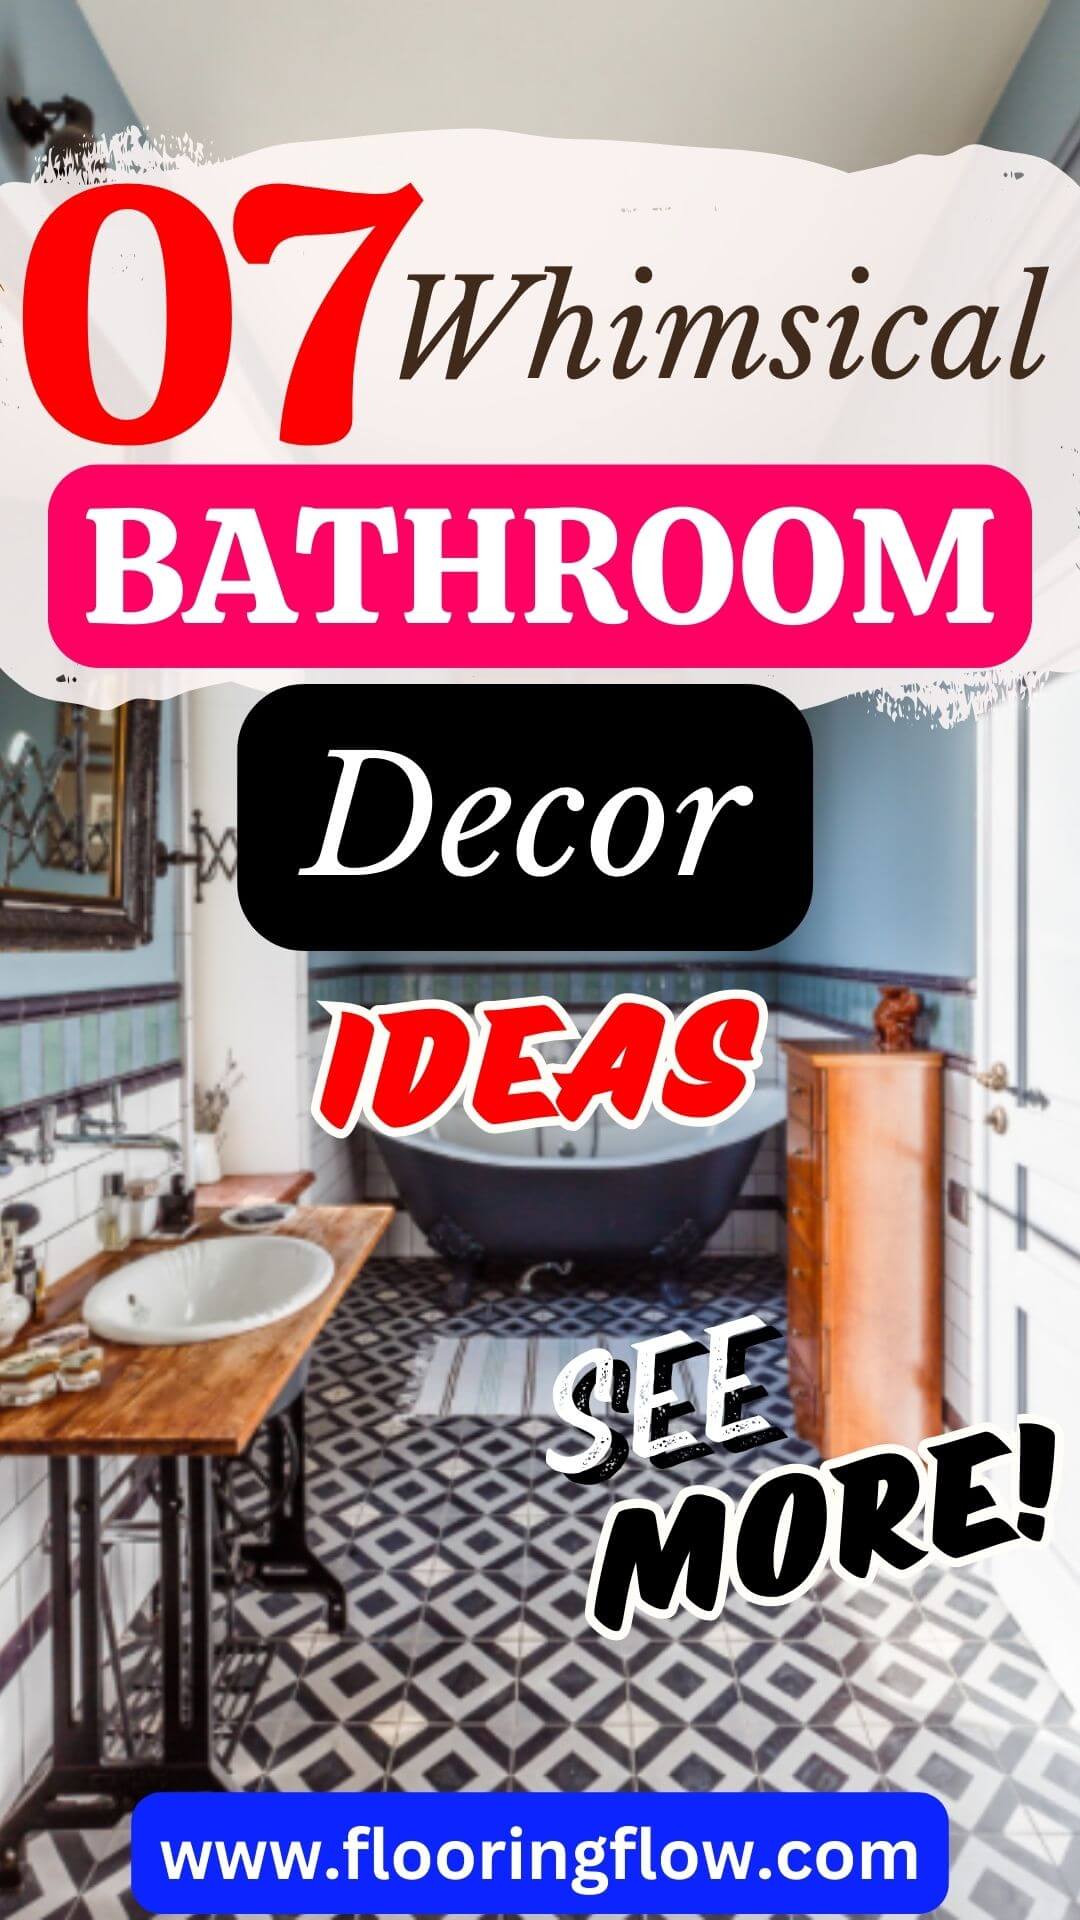 Whimsical Decor Ideas for Your Bathroom